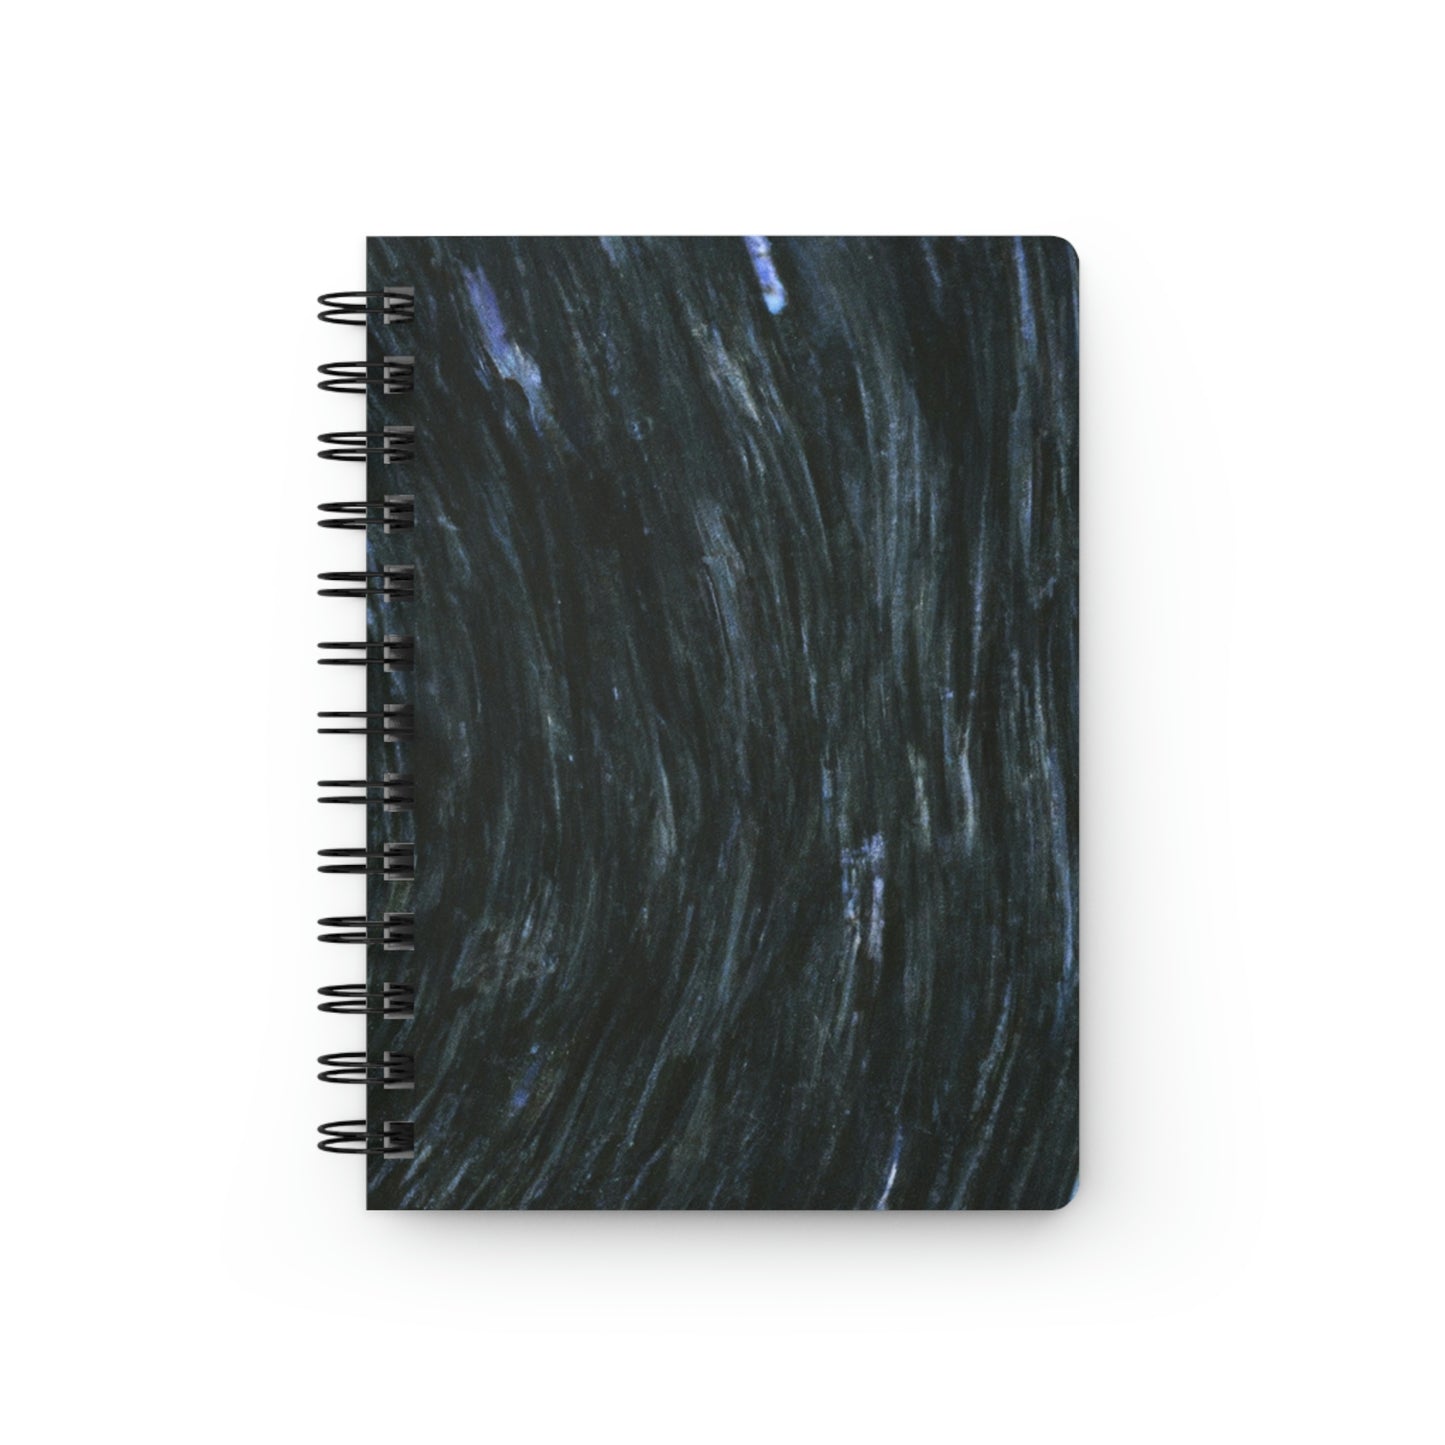 "Una tempestad celestial" - The Alien Cuaderno encuadernado en espiral